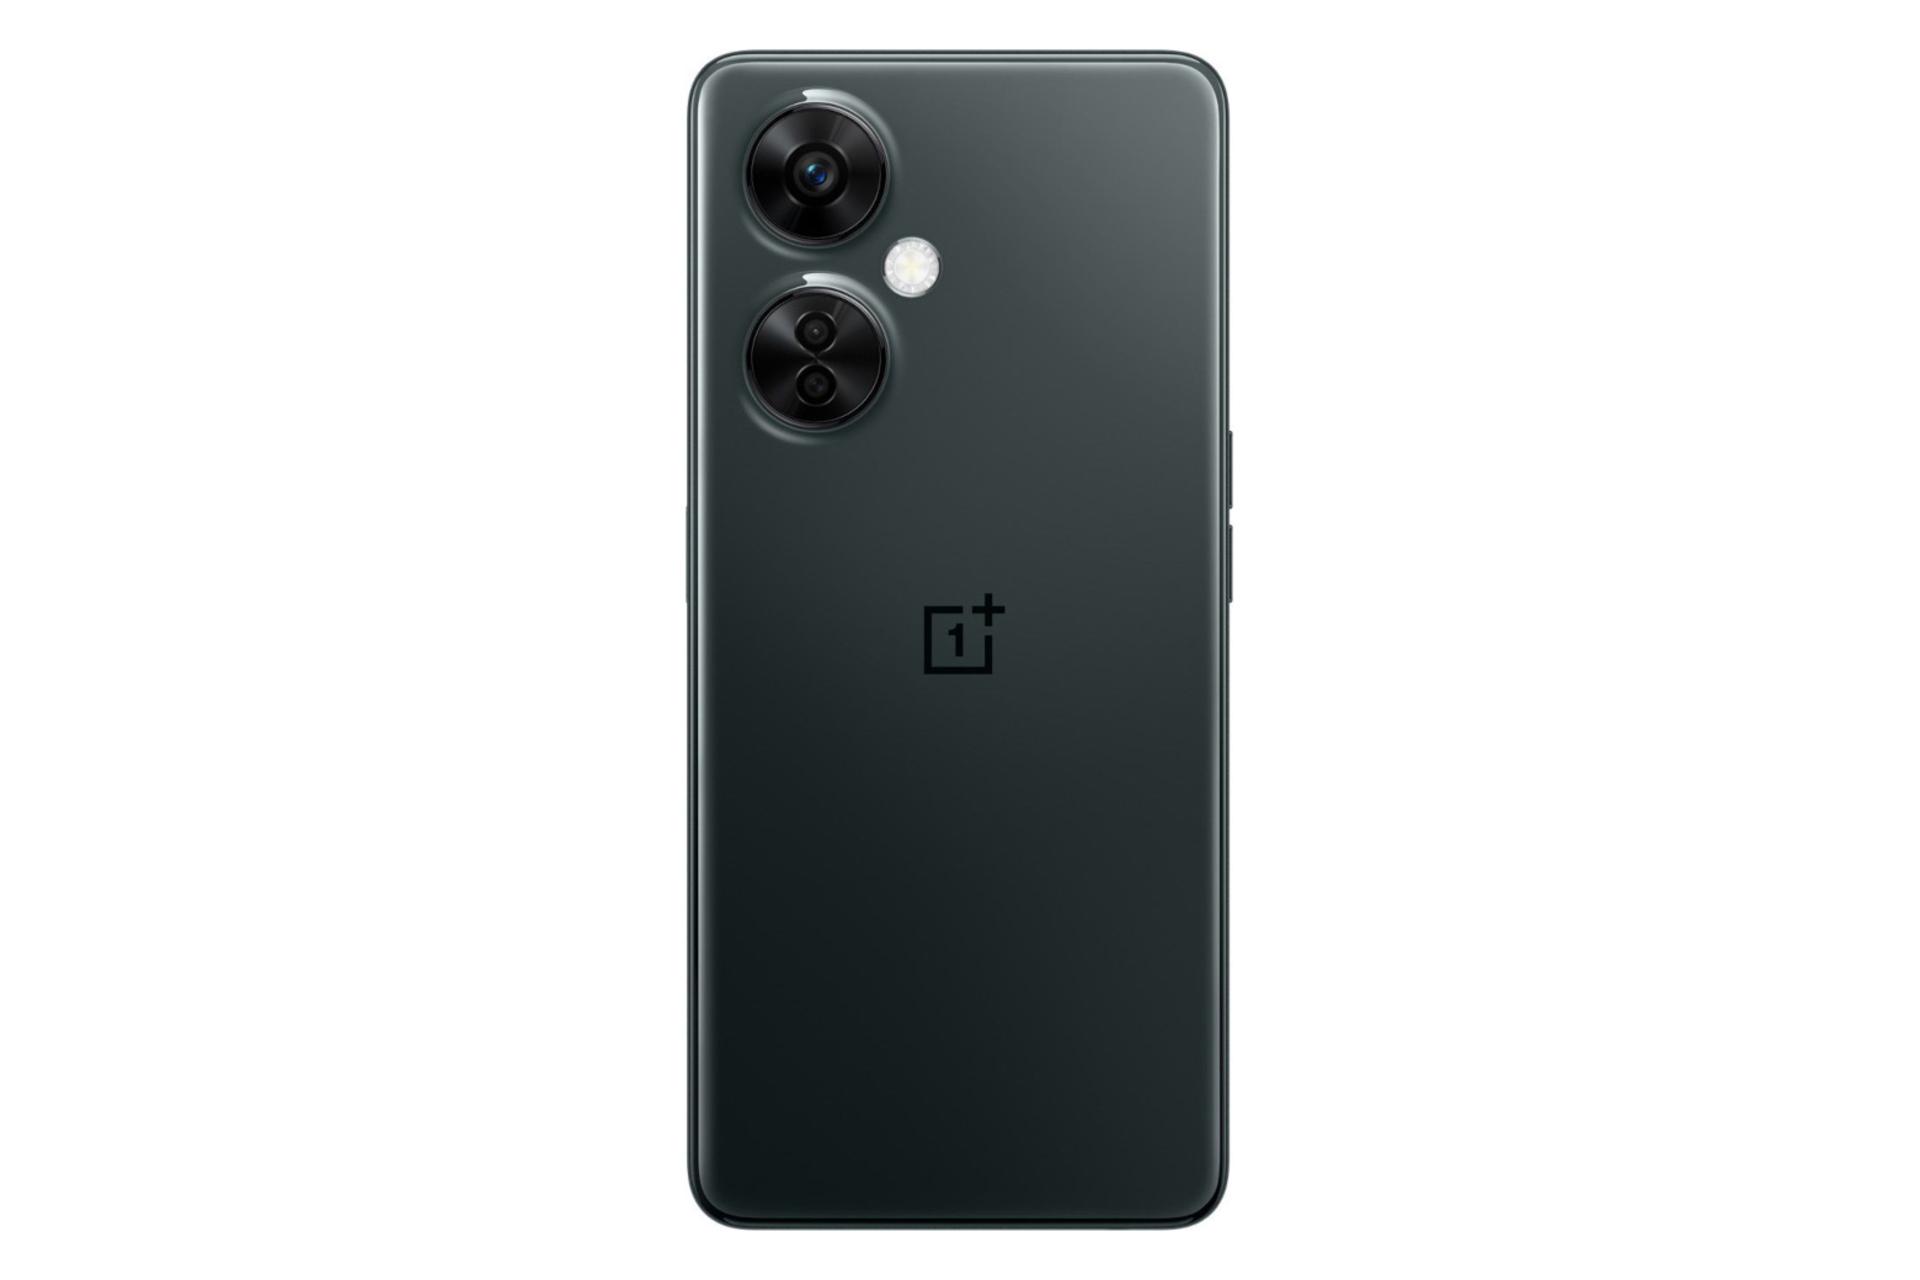 گوشی موبایل وان پلاس نورد CE 3 لایت / OnePlus Nord CE 3 Lite خاکستری تیره